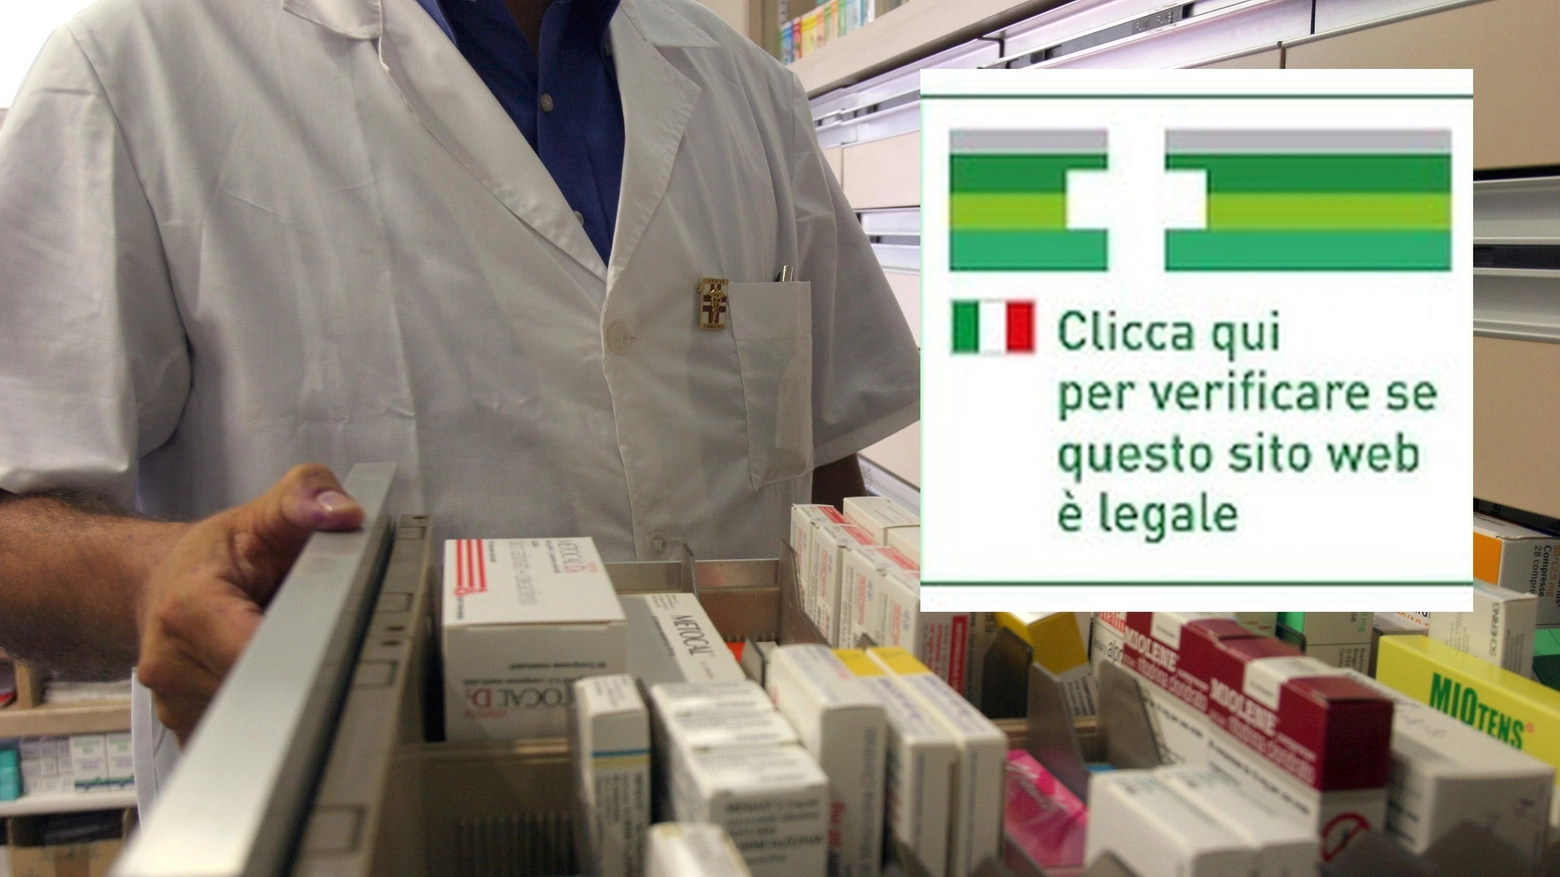 Una farmacia e il logo dei siti legali per la vendita di fasmaci online